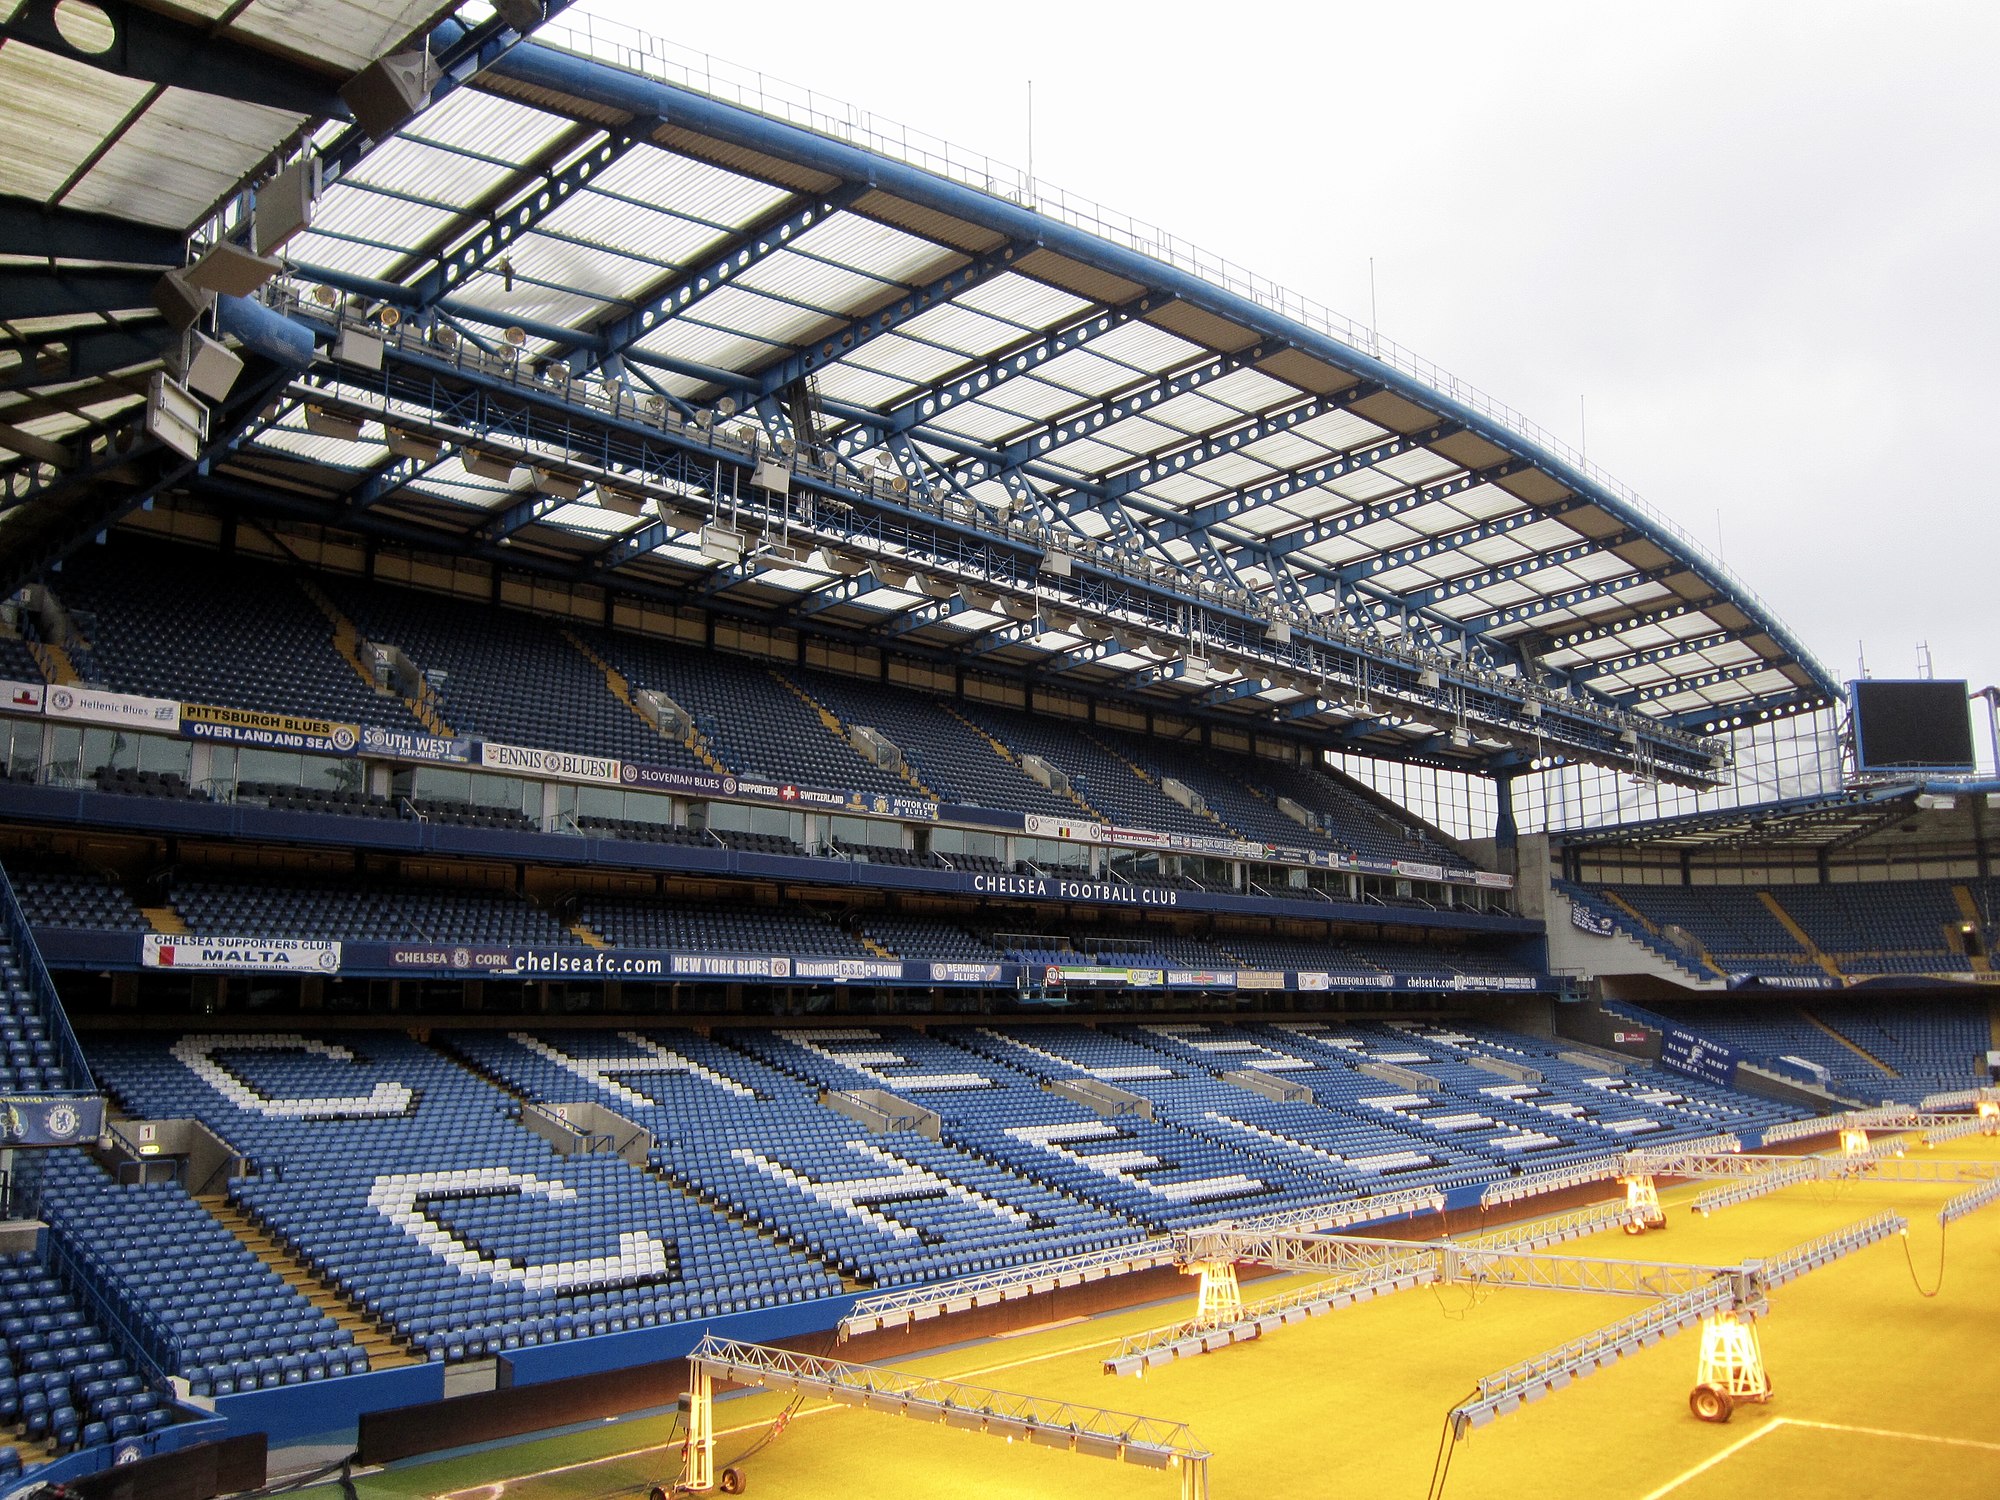 Chelsea's key transfer targets